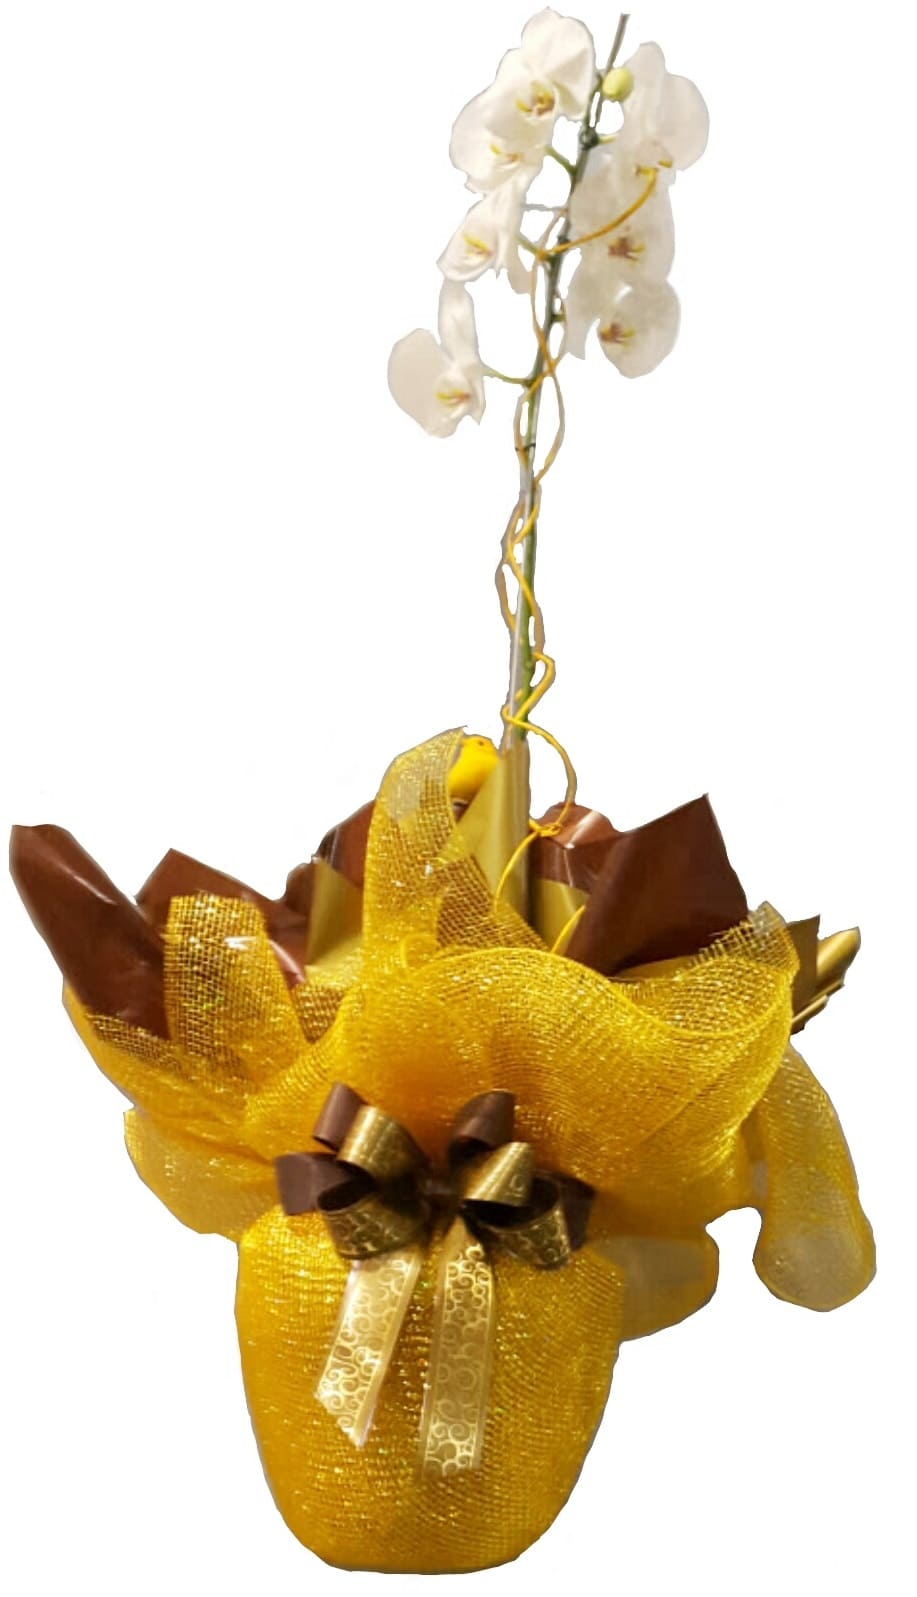 Imagen de Solamente tu Descripcion: Planta de orquídea con espectacular envoltura. Encargar con tiempo,distintos colores  